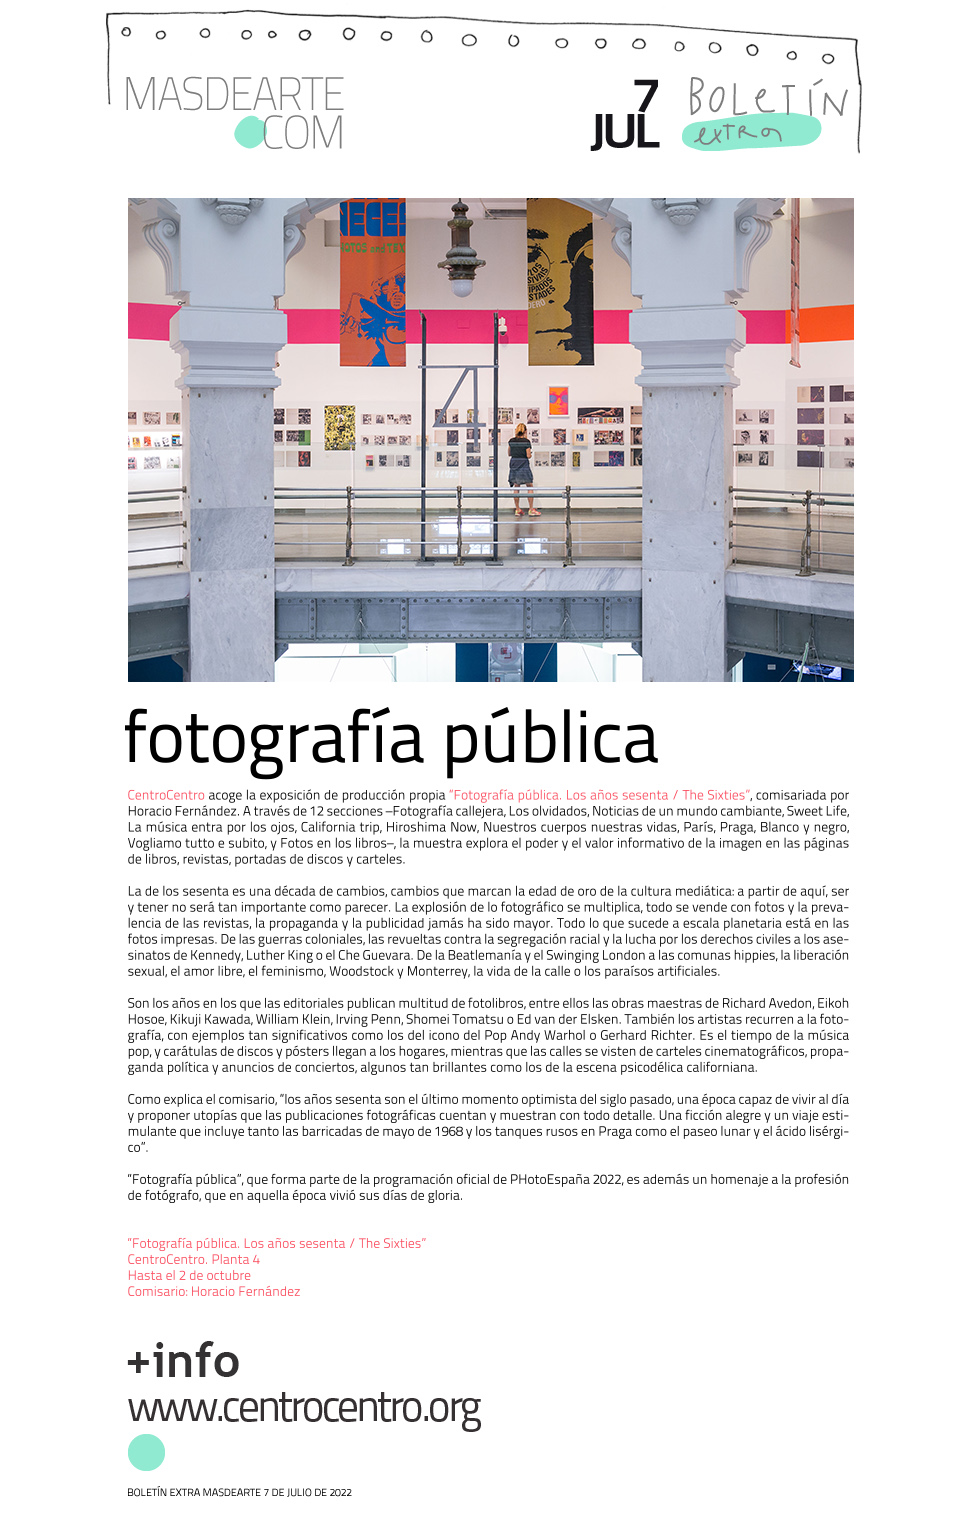 CentroCentro acoge la exposición Fotografía pública. Los años
 sesenta / The Sixties. Hasta el 2 de octubre 2022